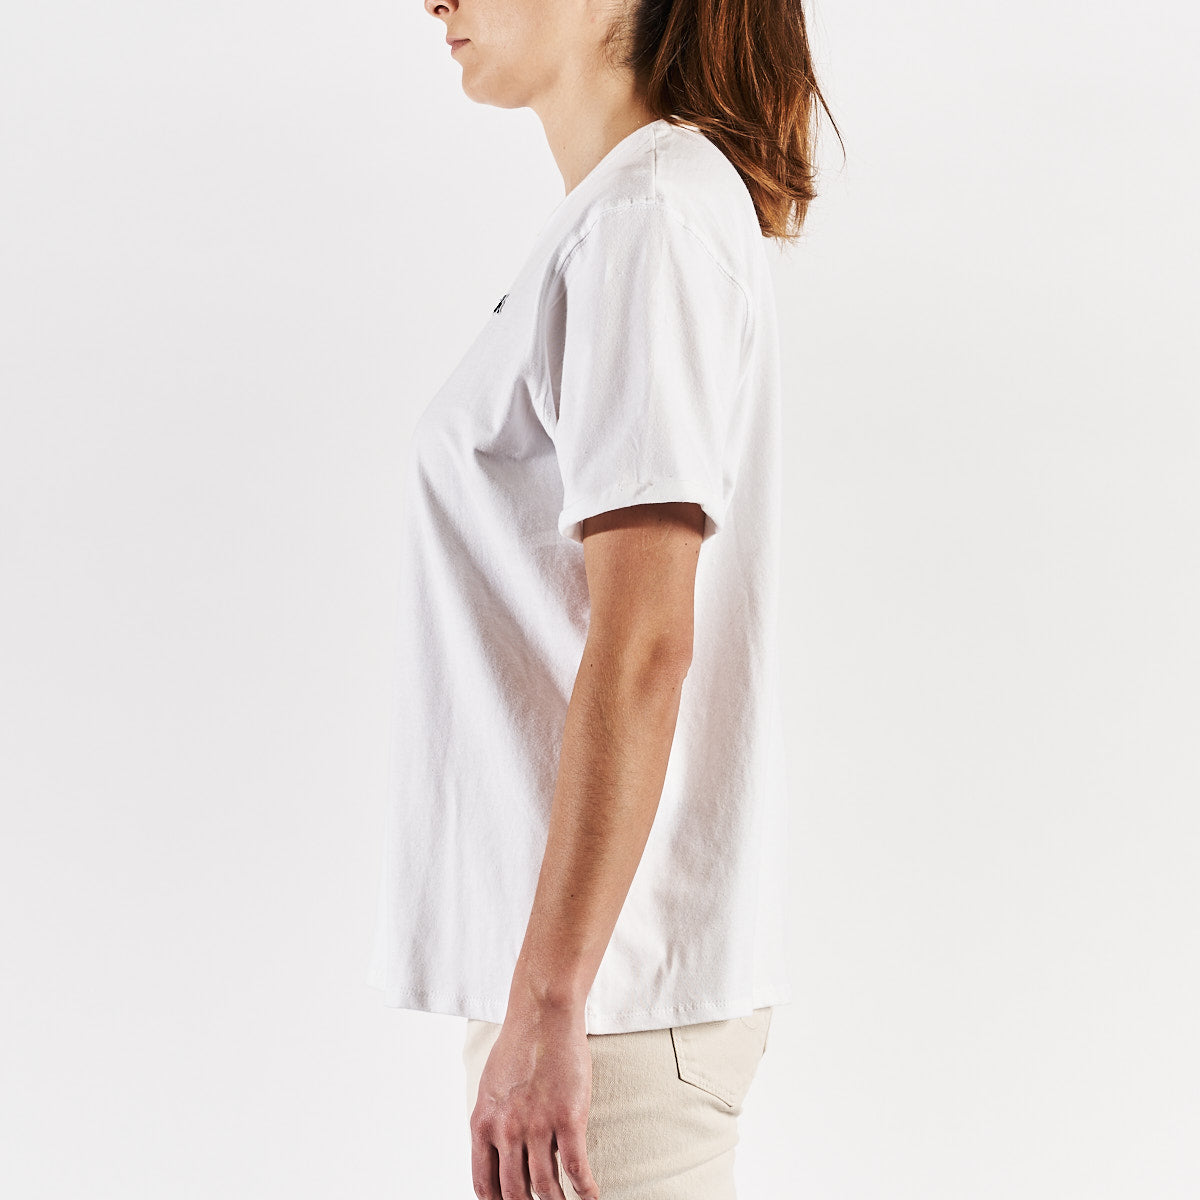 Camiseta Sarah Robe di Kappa Blanca Mujer - imagen 2